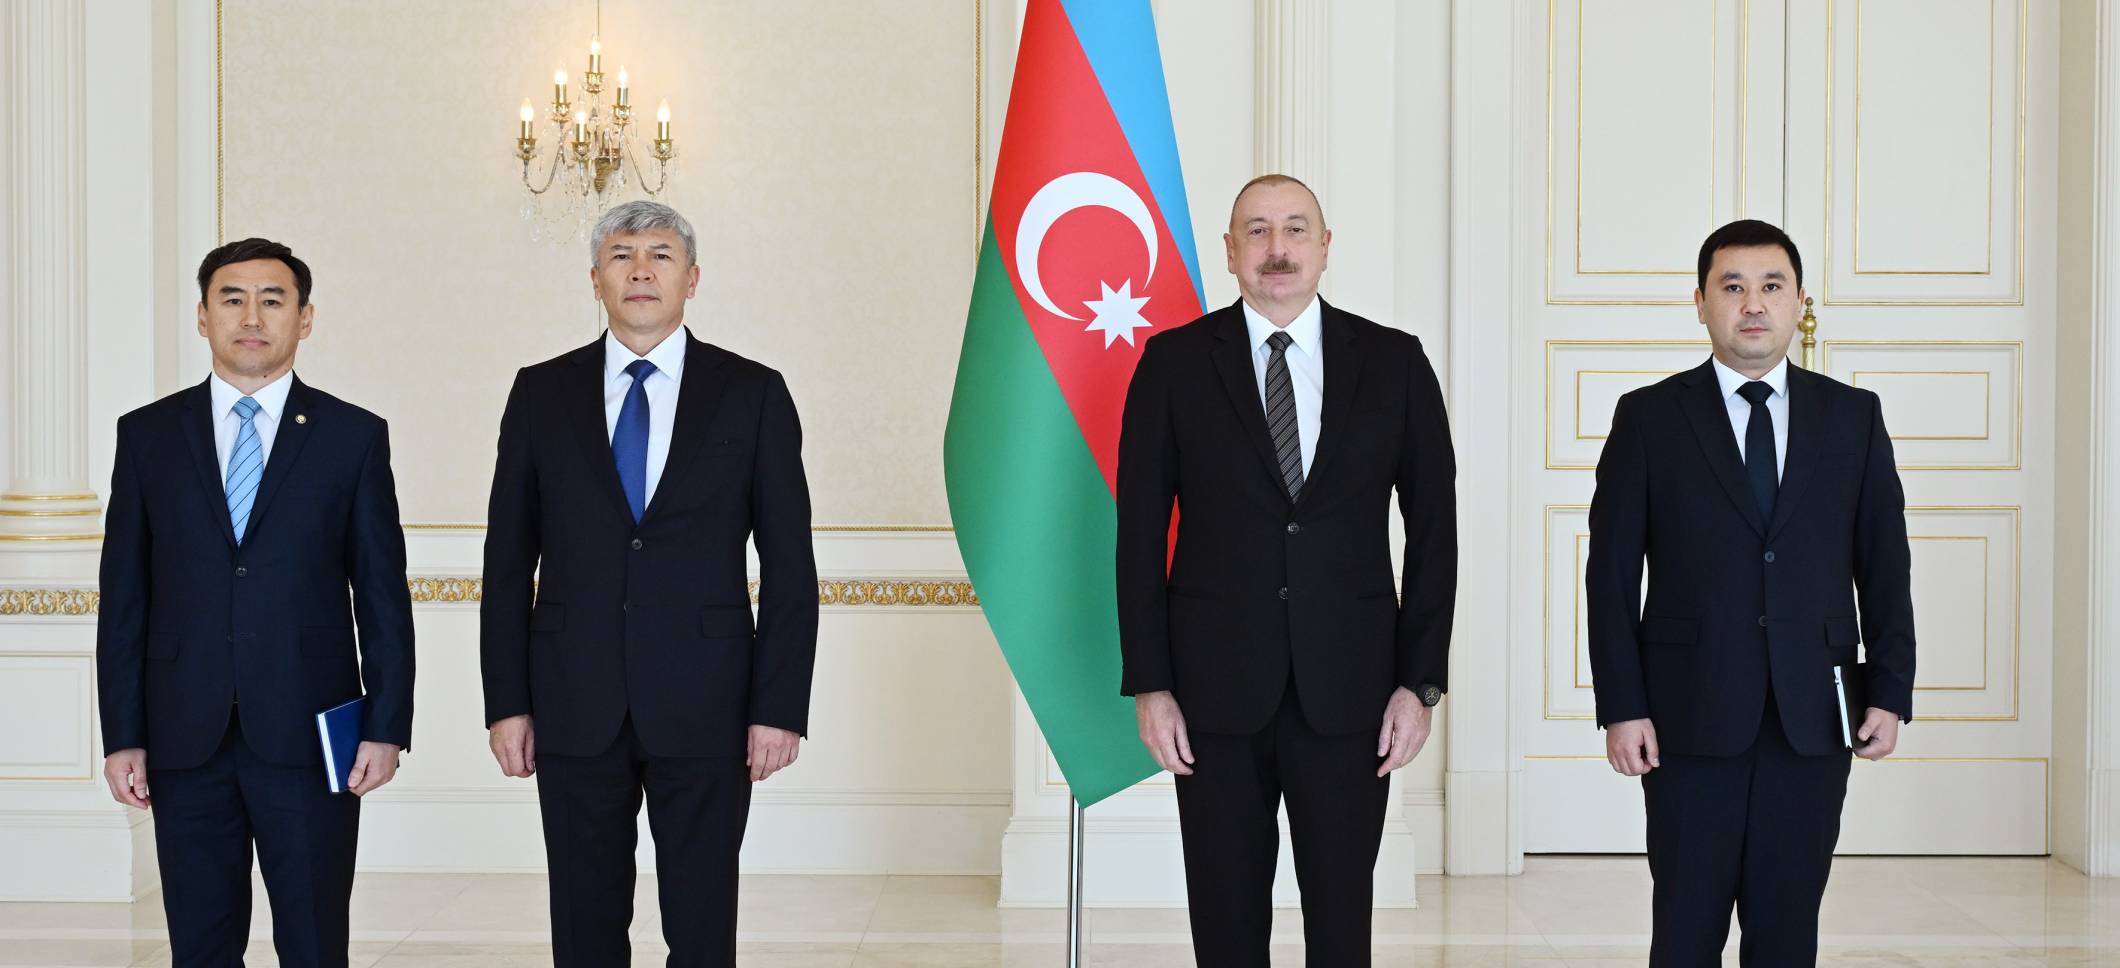 Ильхам Алиев принял верительные грамоты новоназначенного посла Кыргызской Республики в нашей стране